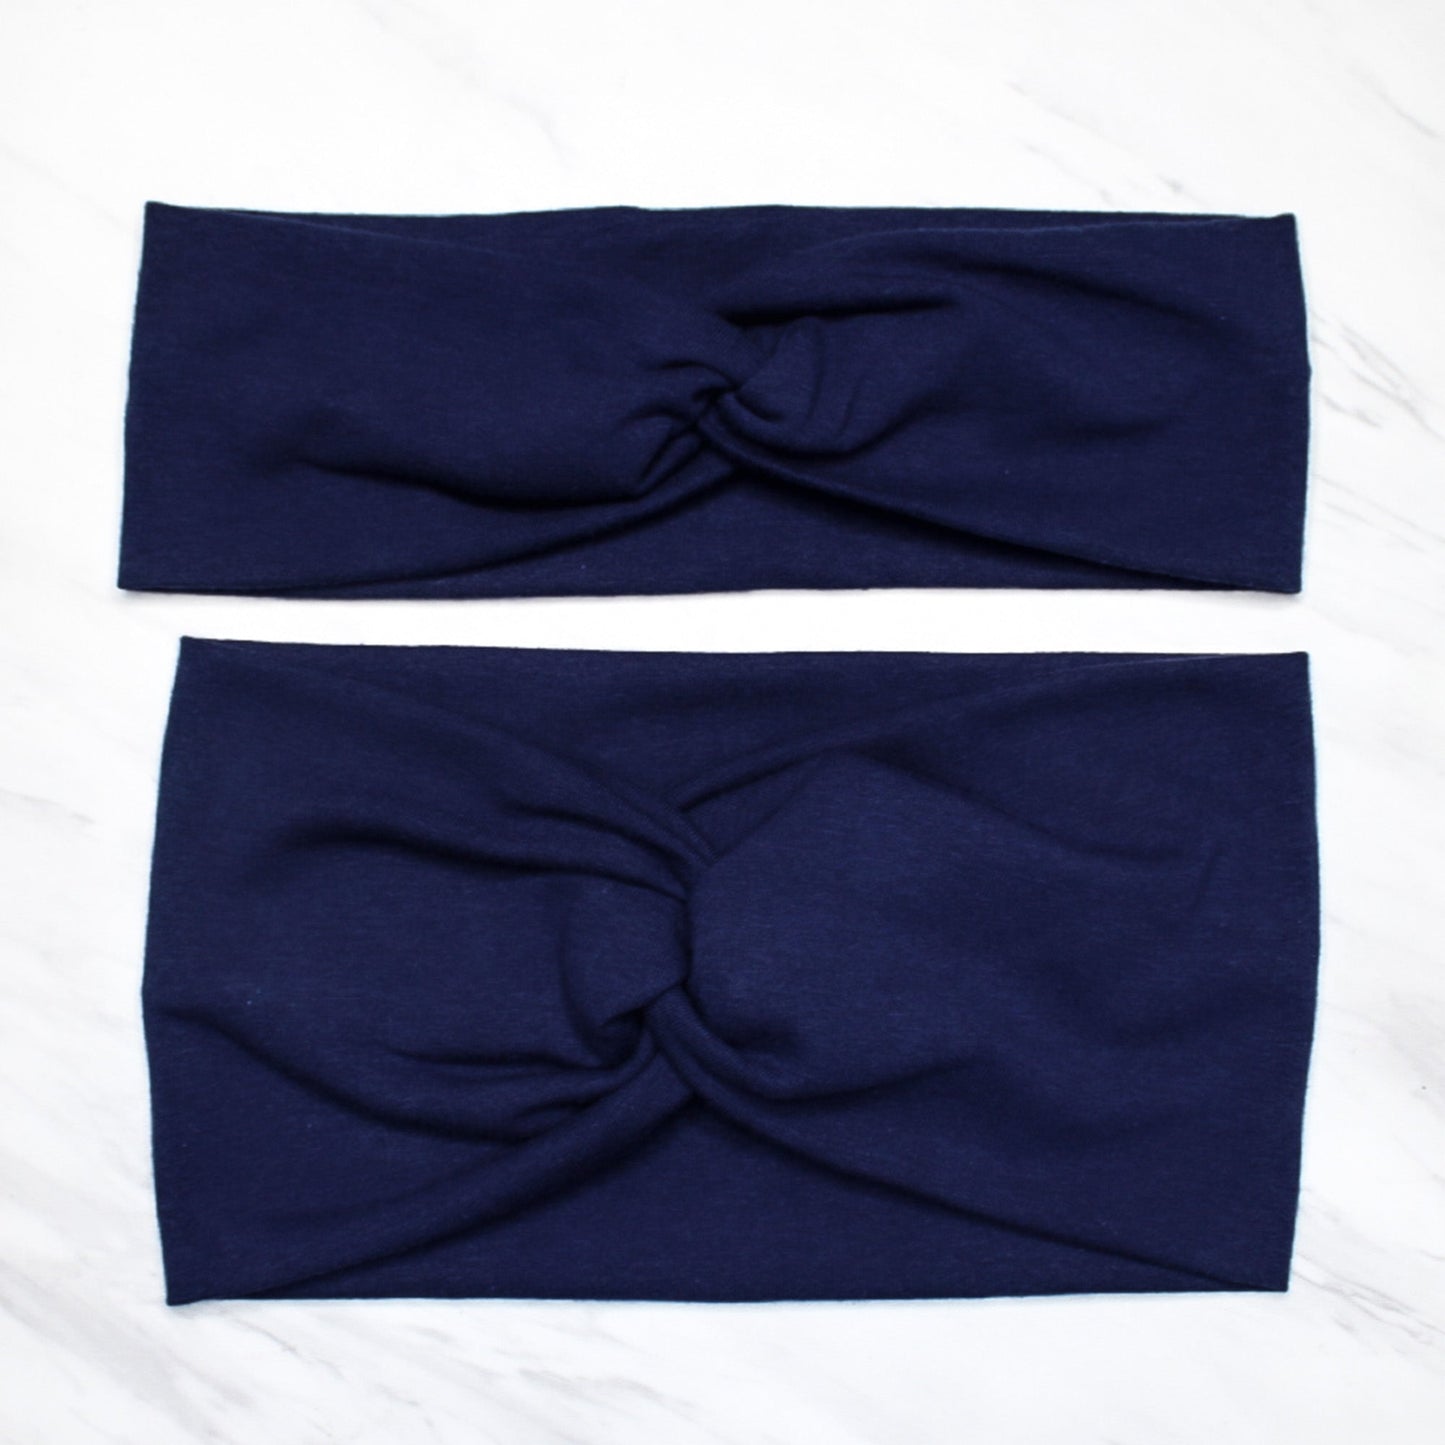 Wide Solid Navy Blue Twist Headband, Cotton Spandex